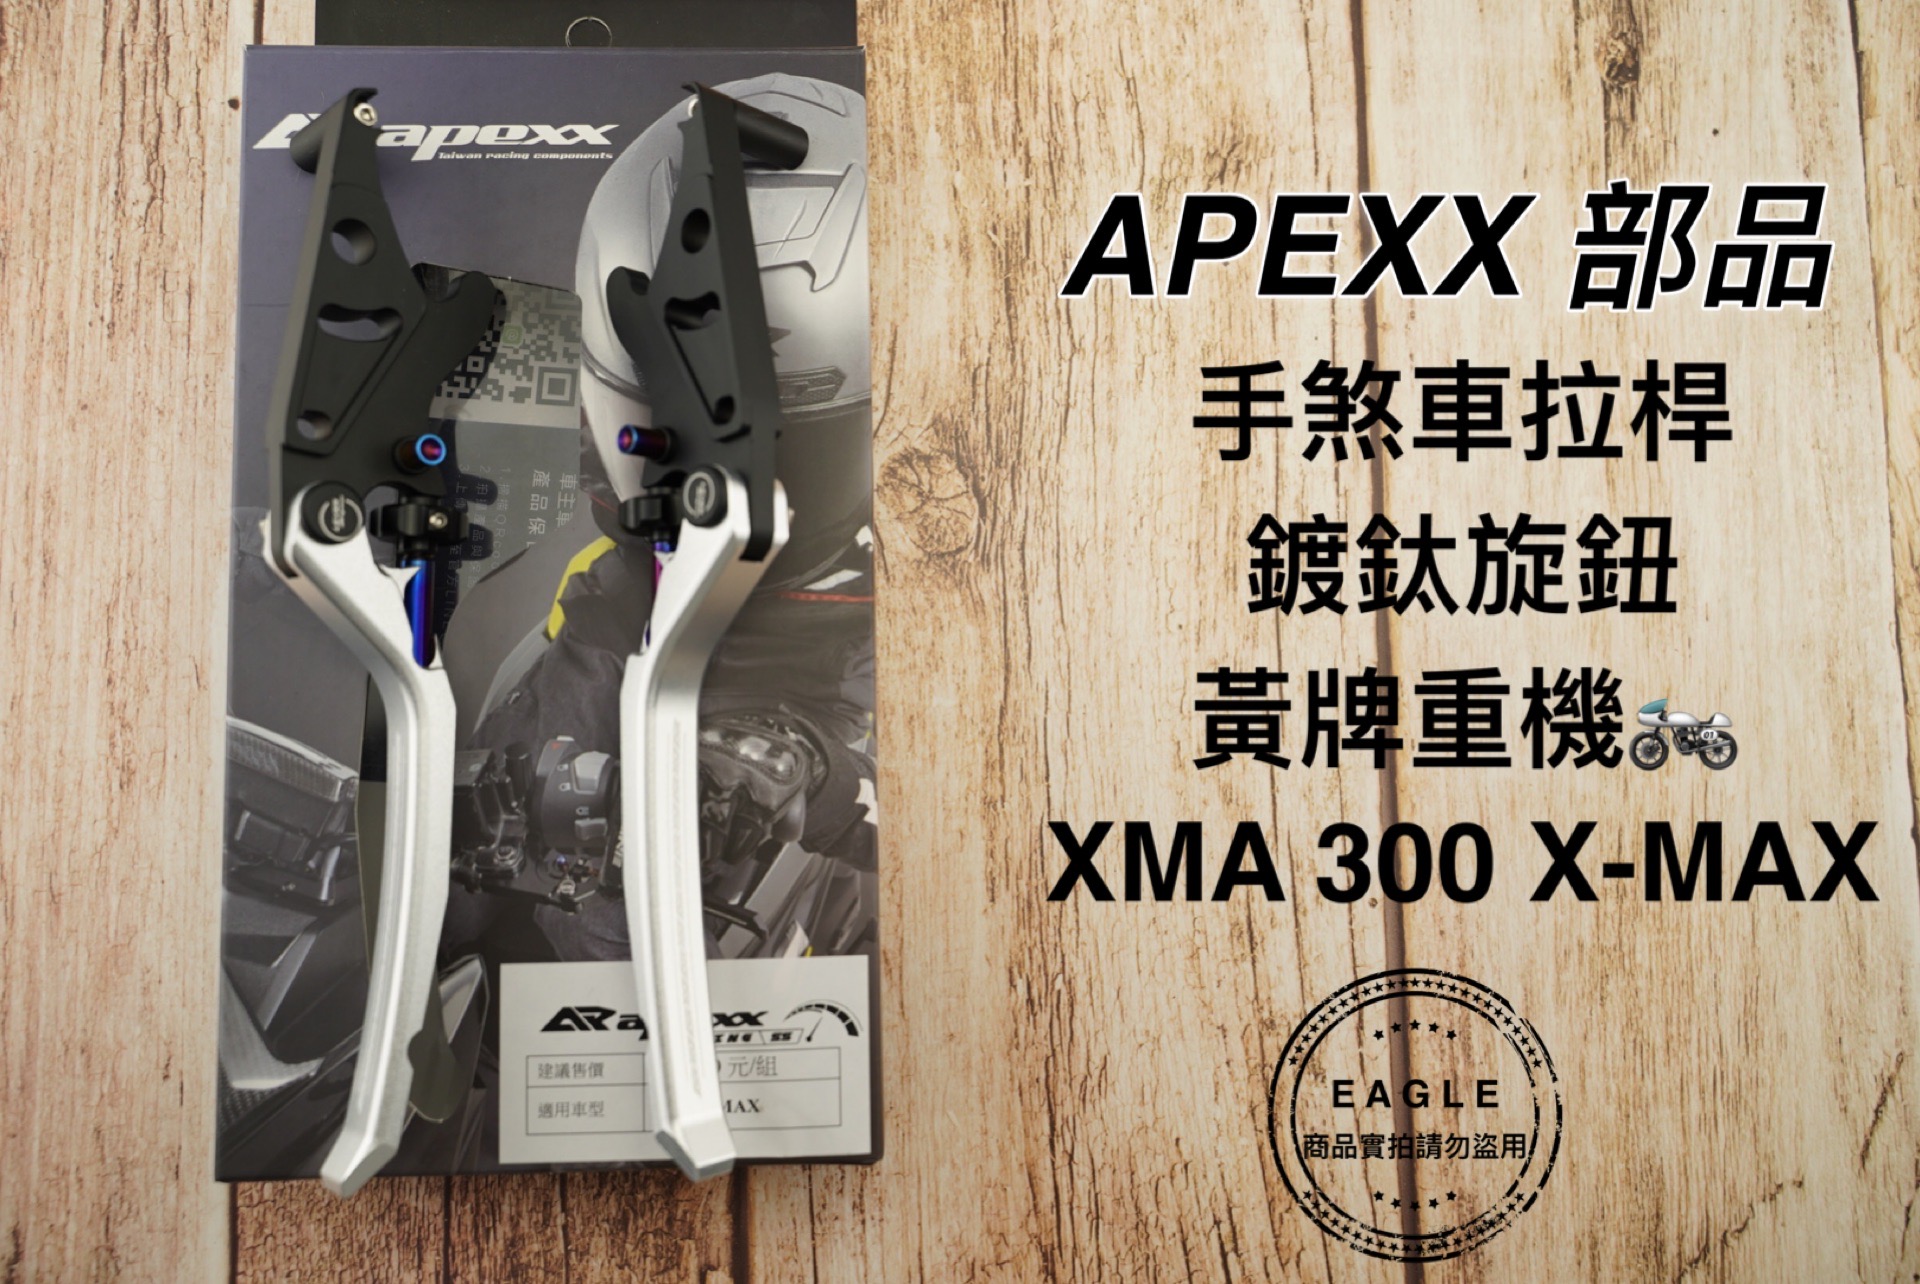 APEXX 煞車拉桿 手煞車拉桿 煞車桿 拉桿 煞車 適用 黃牌 XMAX -300 xmax